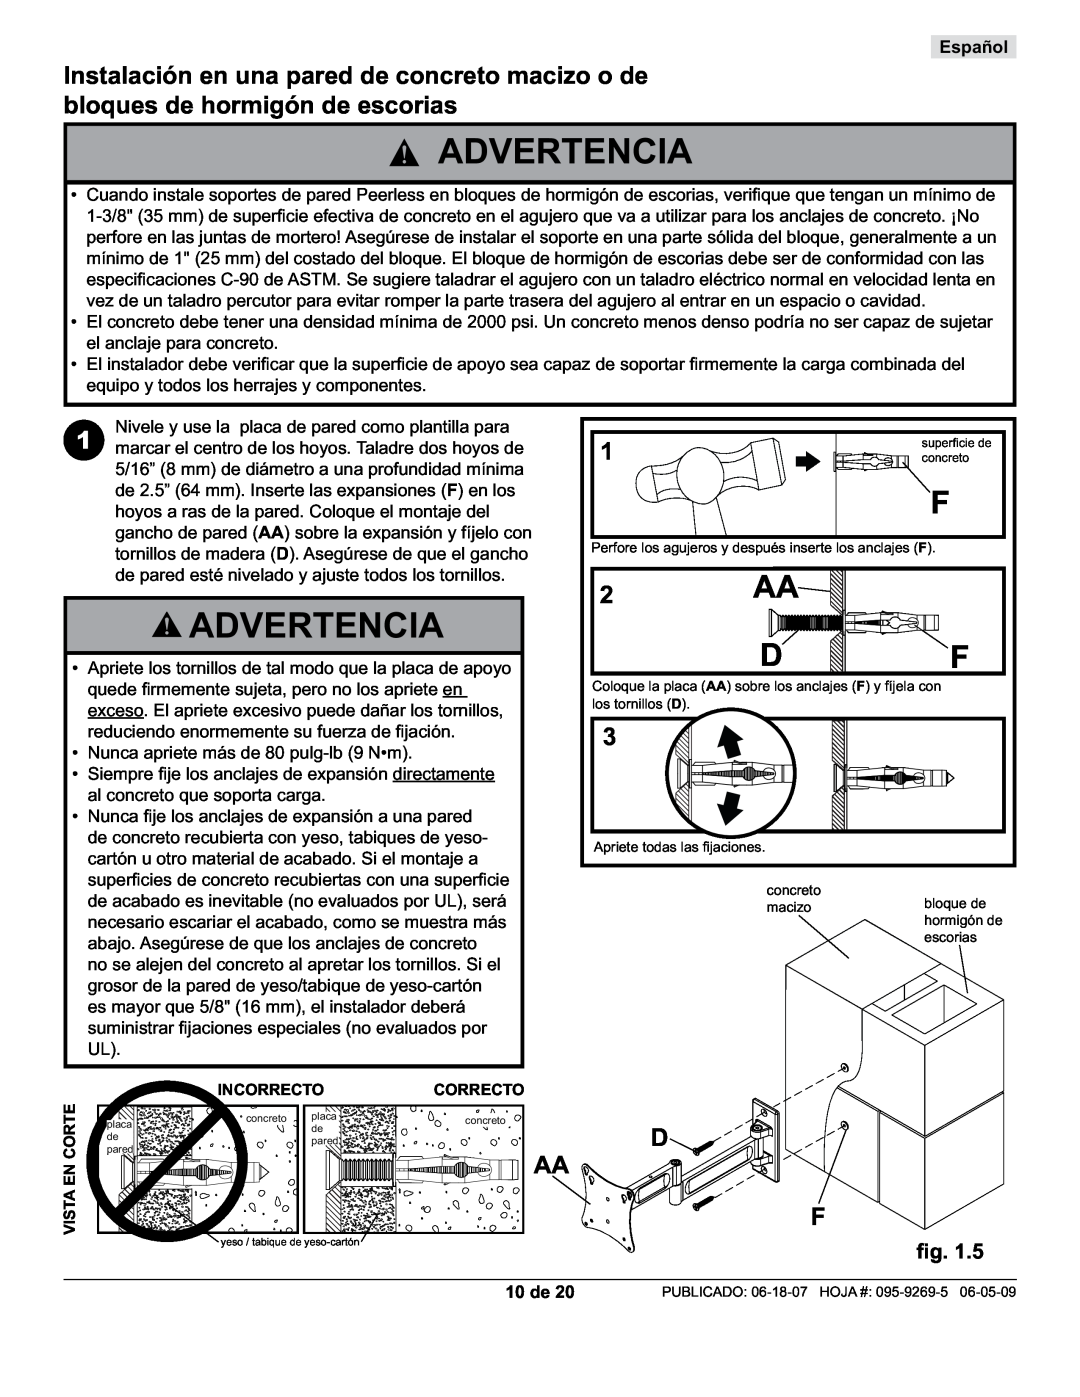 Peerless Industries PA730-S manual 10 de, Advertencia, Español, Nivele y use la placa de pared como plantilla para 